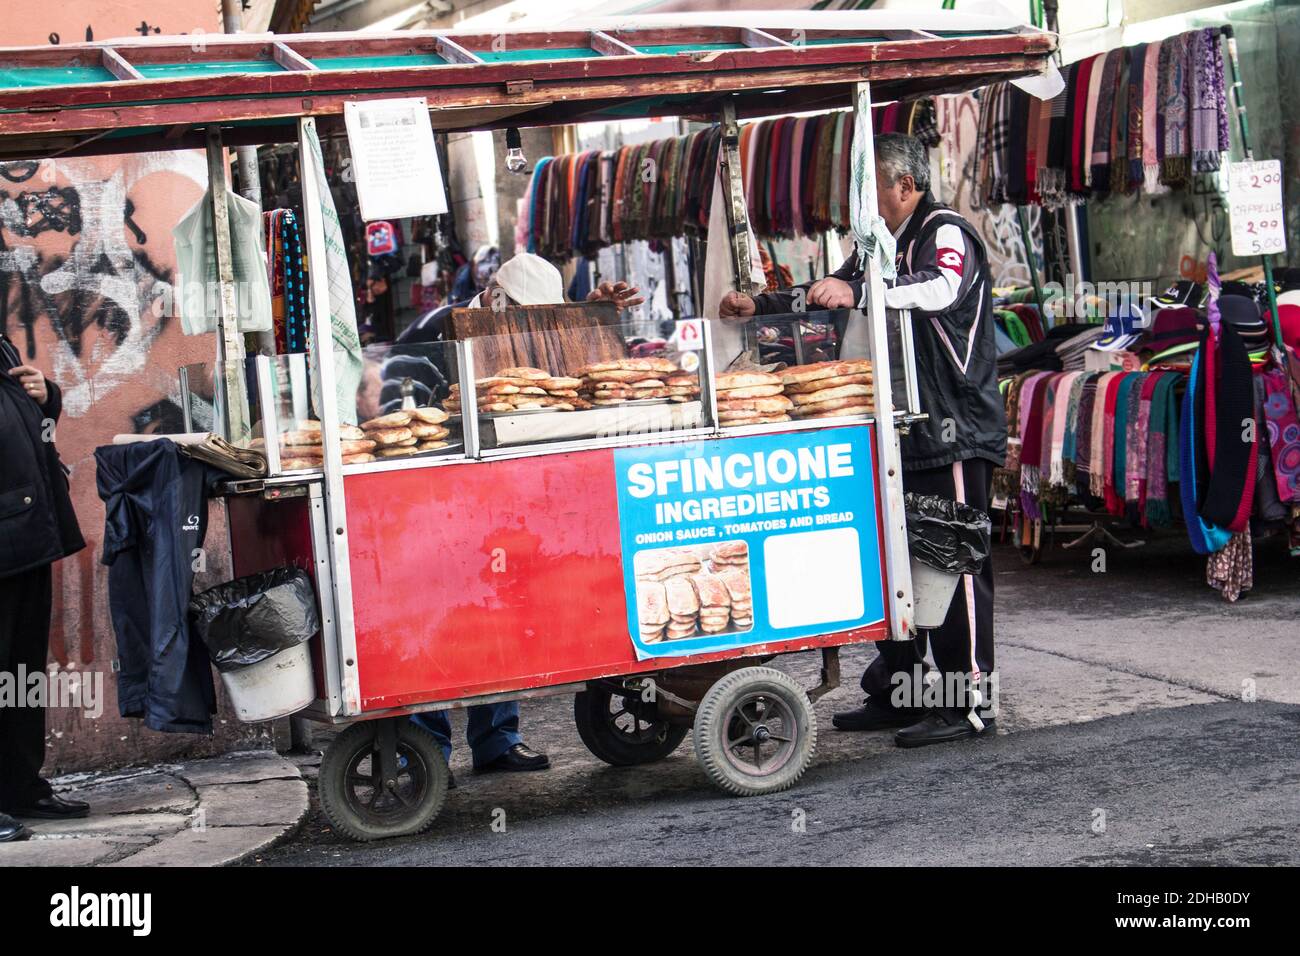 Street food siciliano: Un venditore di strada di 'fincione' di Palermo (tipica pizza morbida con salsa di cipolla e acciughe) Foto Stock